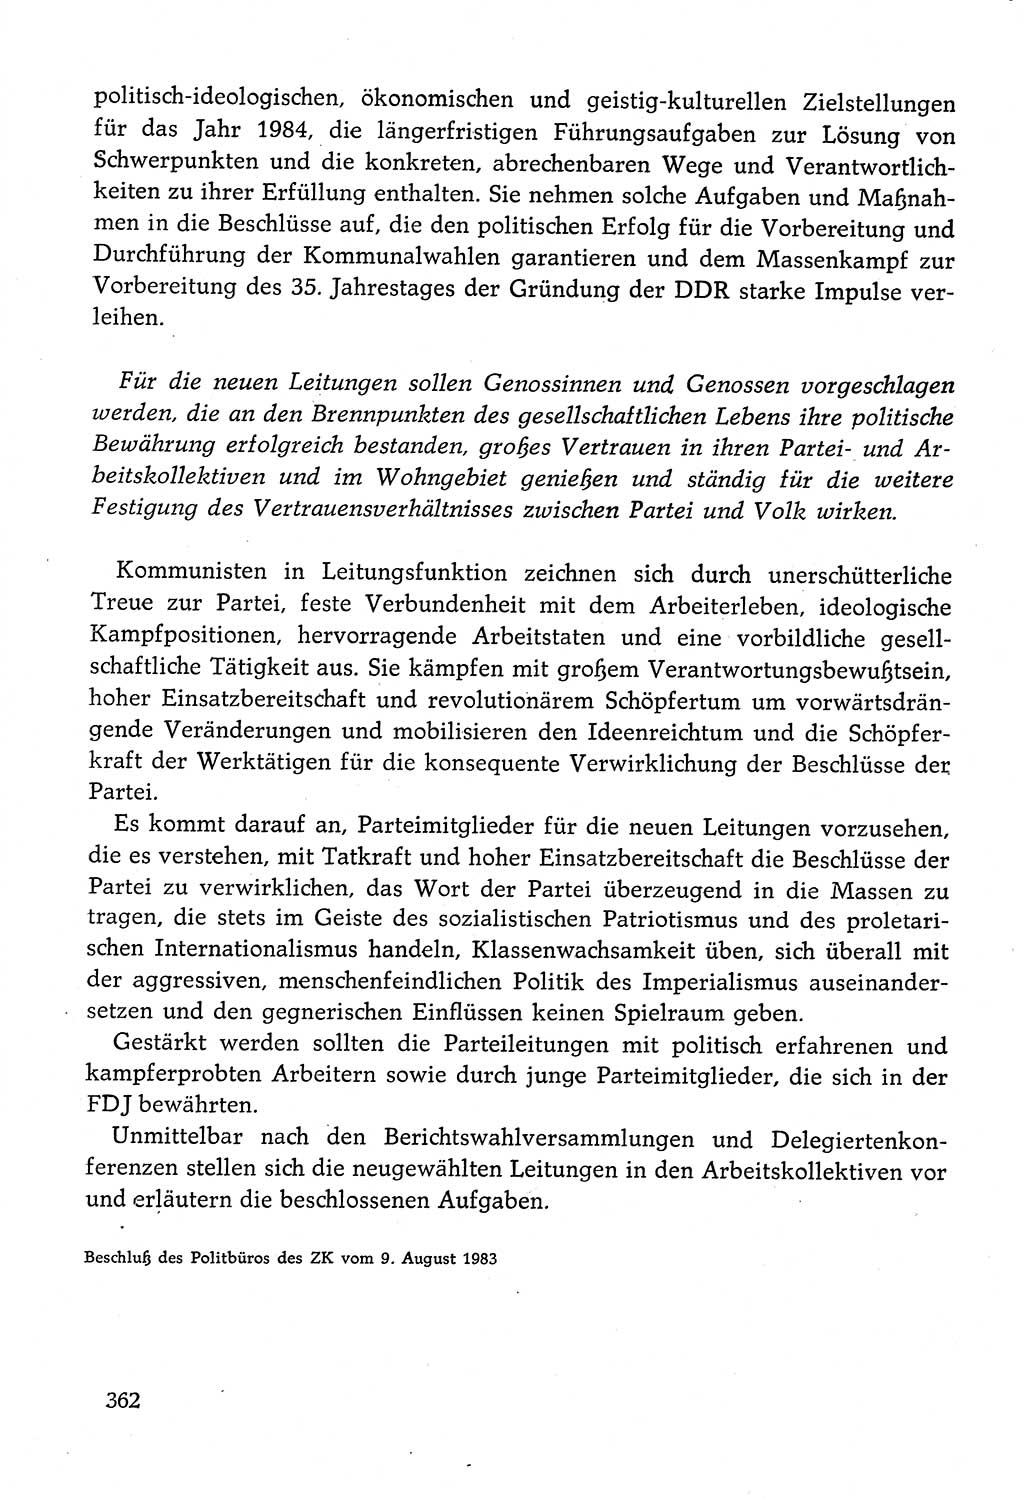 Dokumente der Sozialistischen Einheitspartei Deutschlands (SED) [Deutsche Demokratische Republik (DDR)] 1982-1983, Seite 362 (Dok. SED DDR 1982-1983, S. 362)